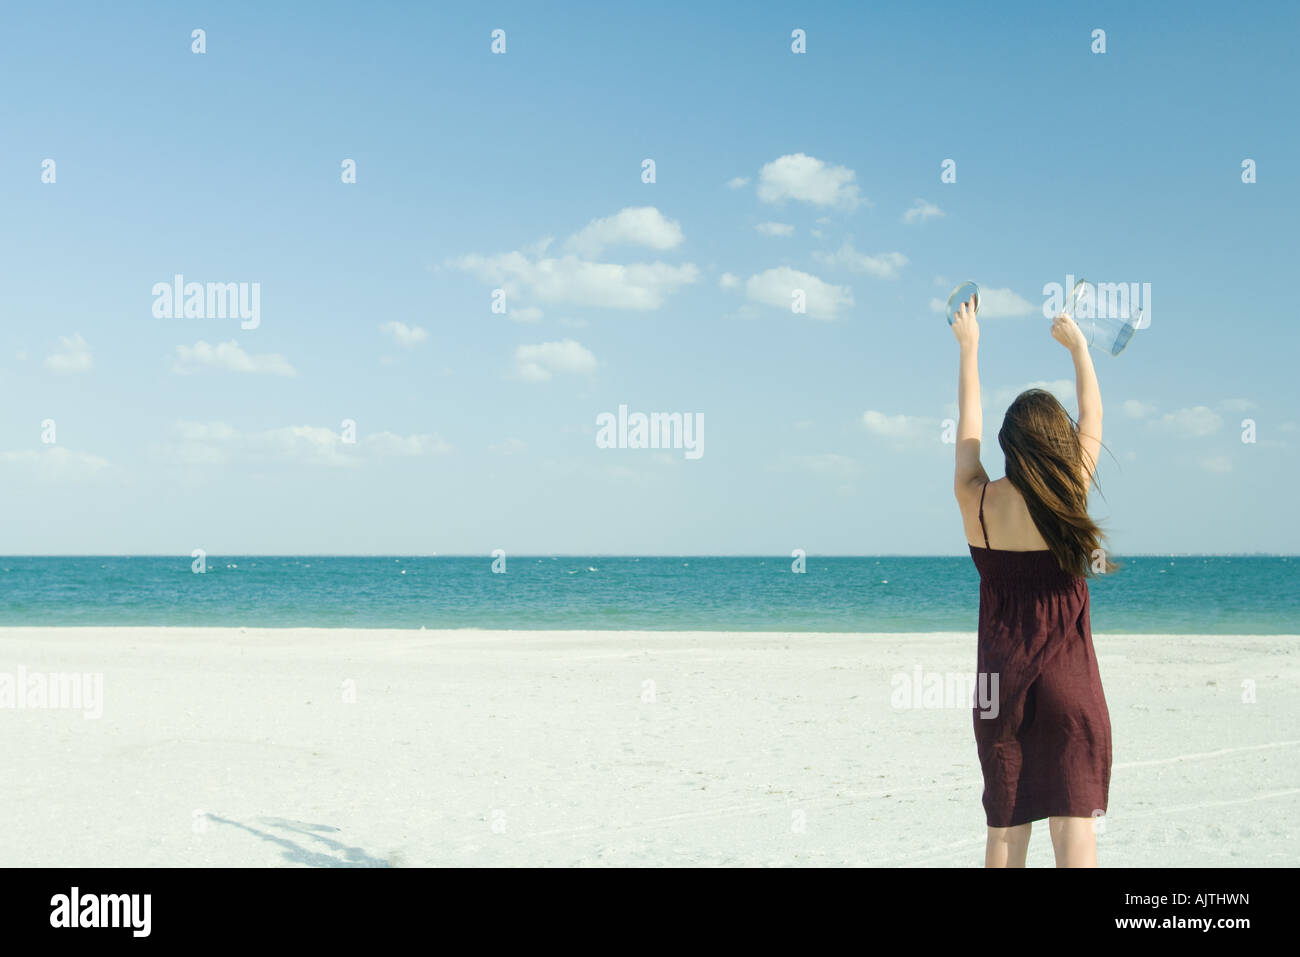 Woman standing on beach, holding up contenant transparent, vue arrière Banque D'Images